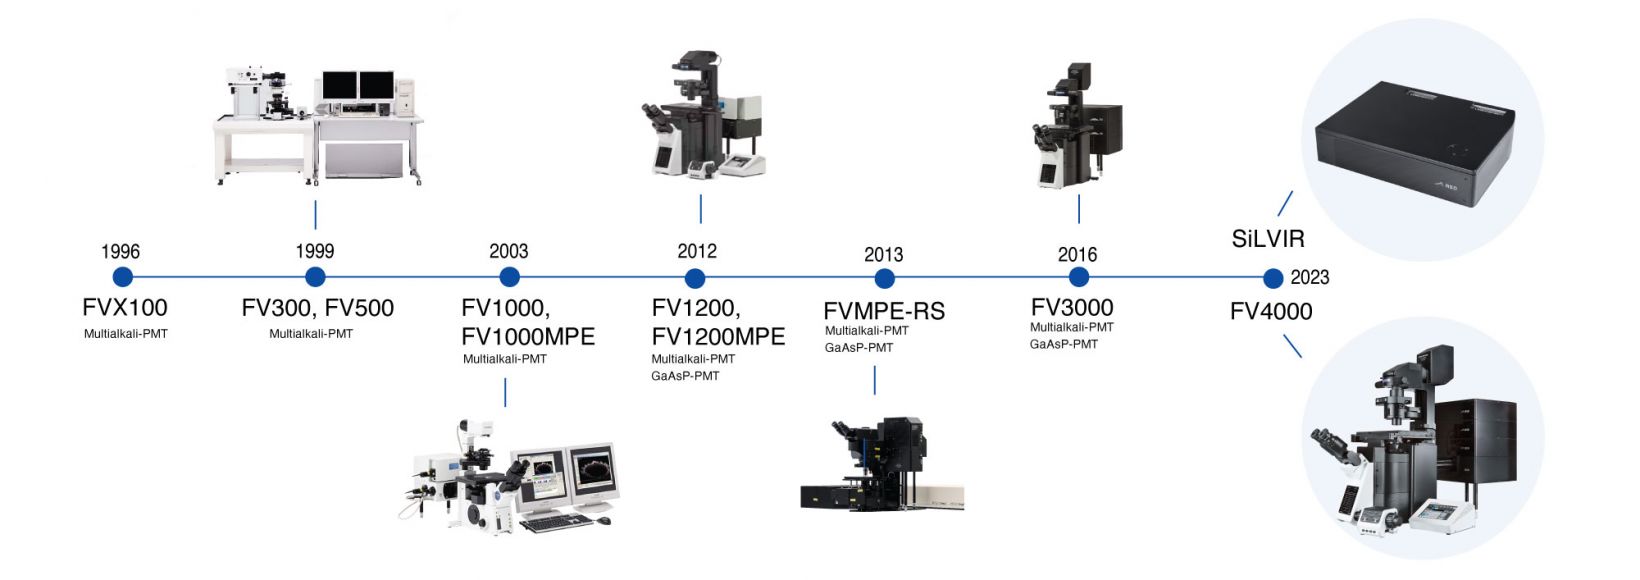 オリンパスから始まりエビデントへと受け継がれた、FV4000共焦点レーザー走査型顕微鏡までの共焦点顕微鏡の開発年表